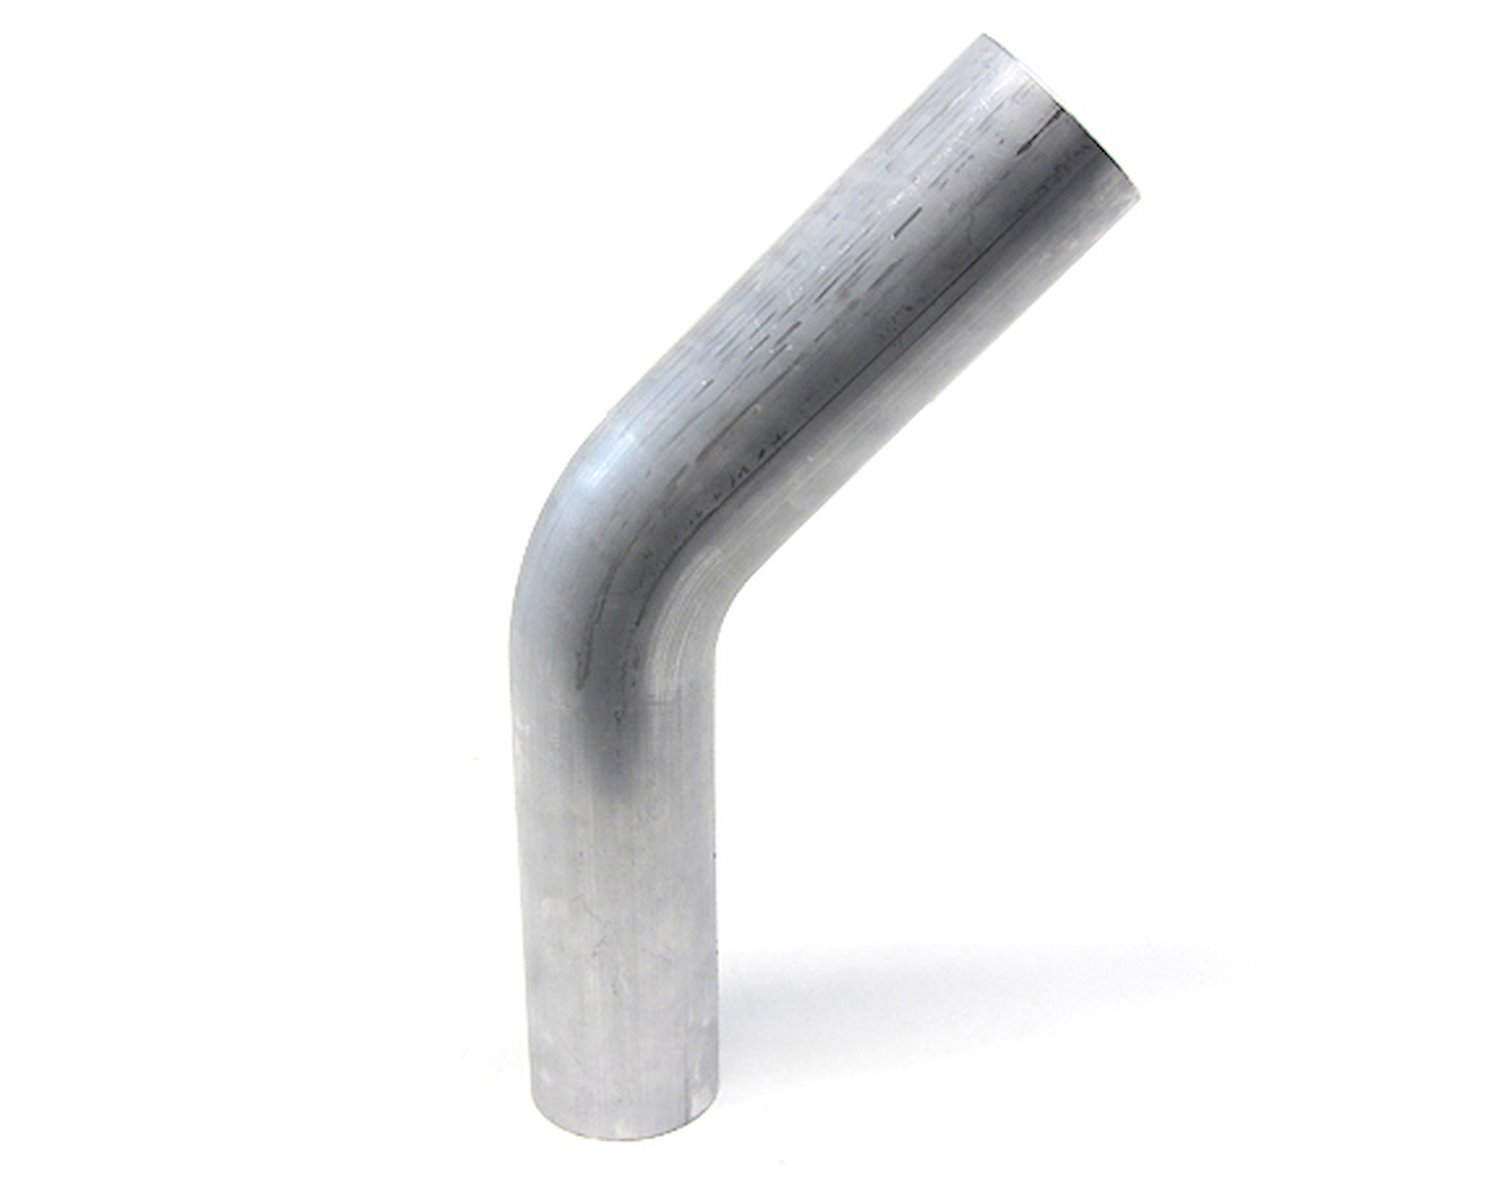 AT45-175-CLR-2 Aluminum Elbow Tube, 6061 Aluminum, 45-Degree Bend Elbow Tubing, 1-3/4 in. OD, Tight Radius, 2 in. CLR